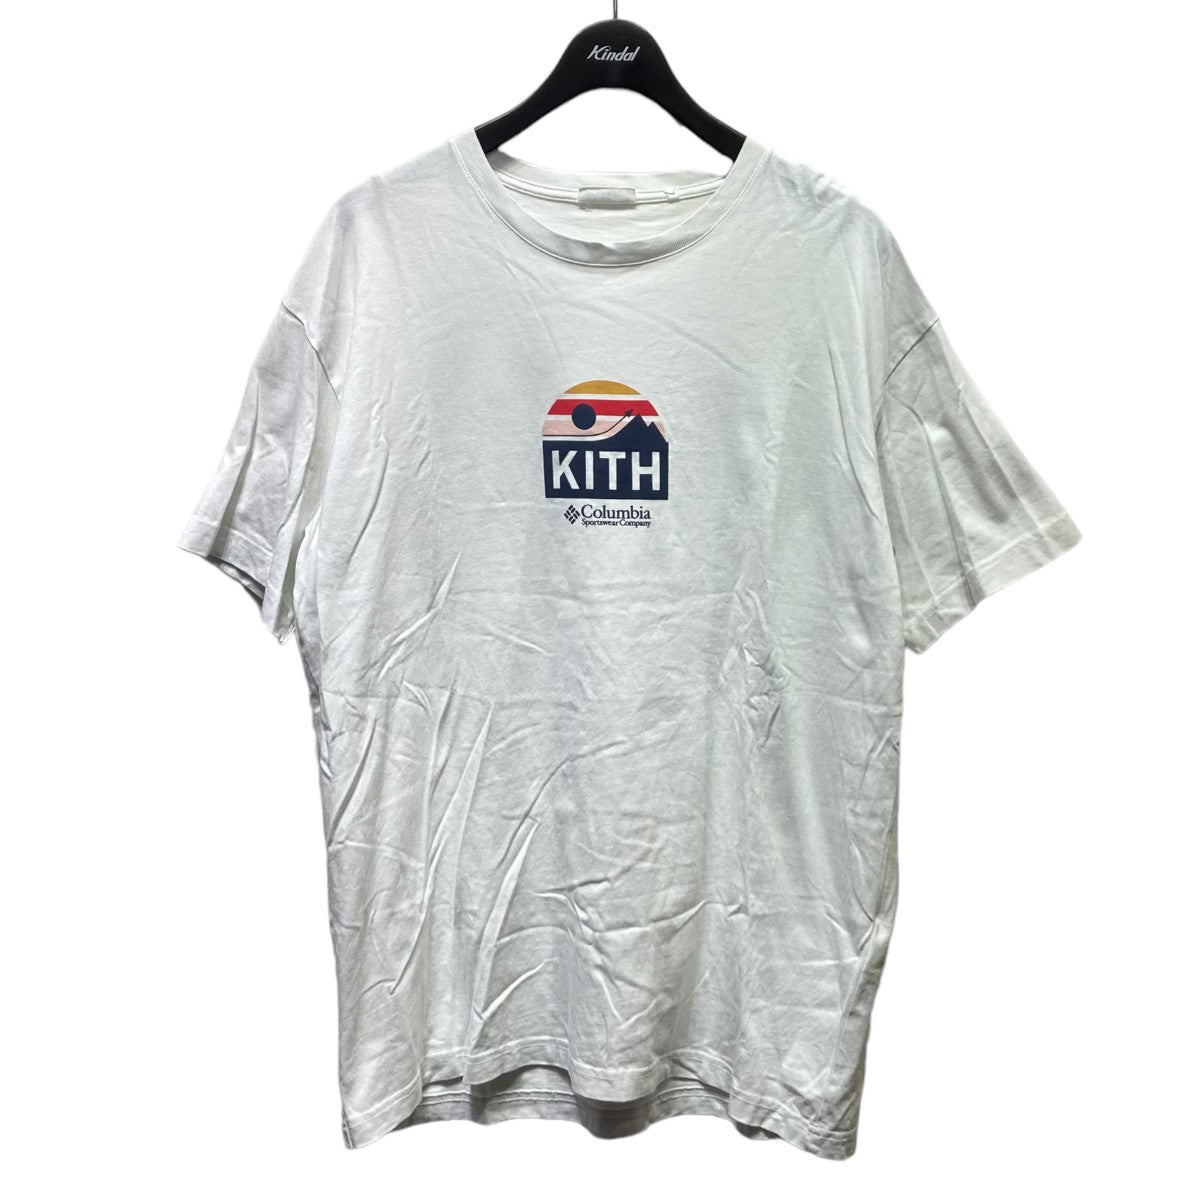 KITH(キス) ×Columbia 22SS Tシャツ 22-071-060-0029-2-0 